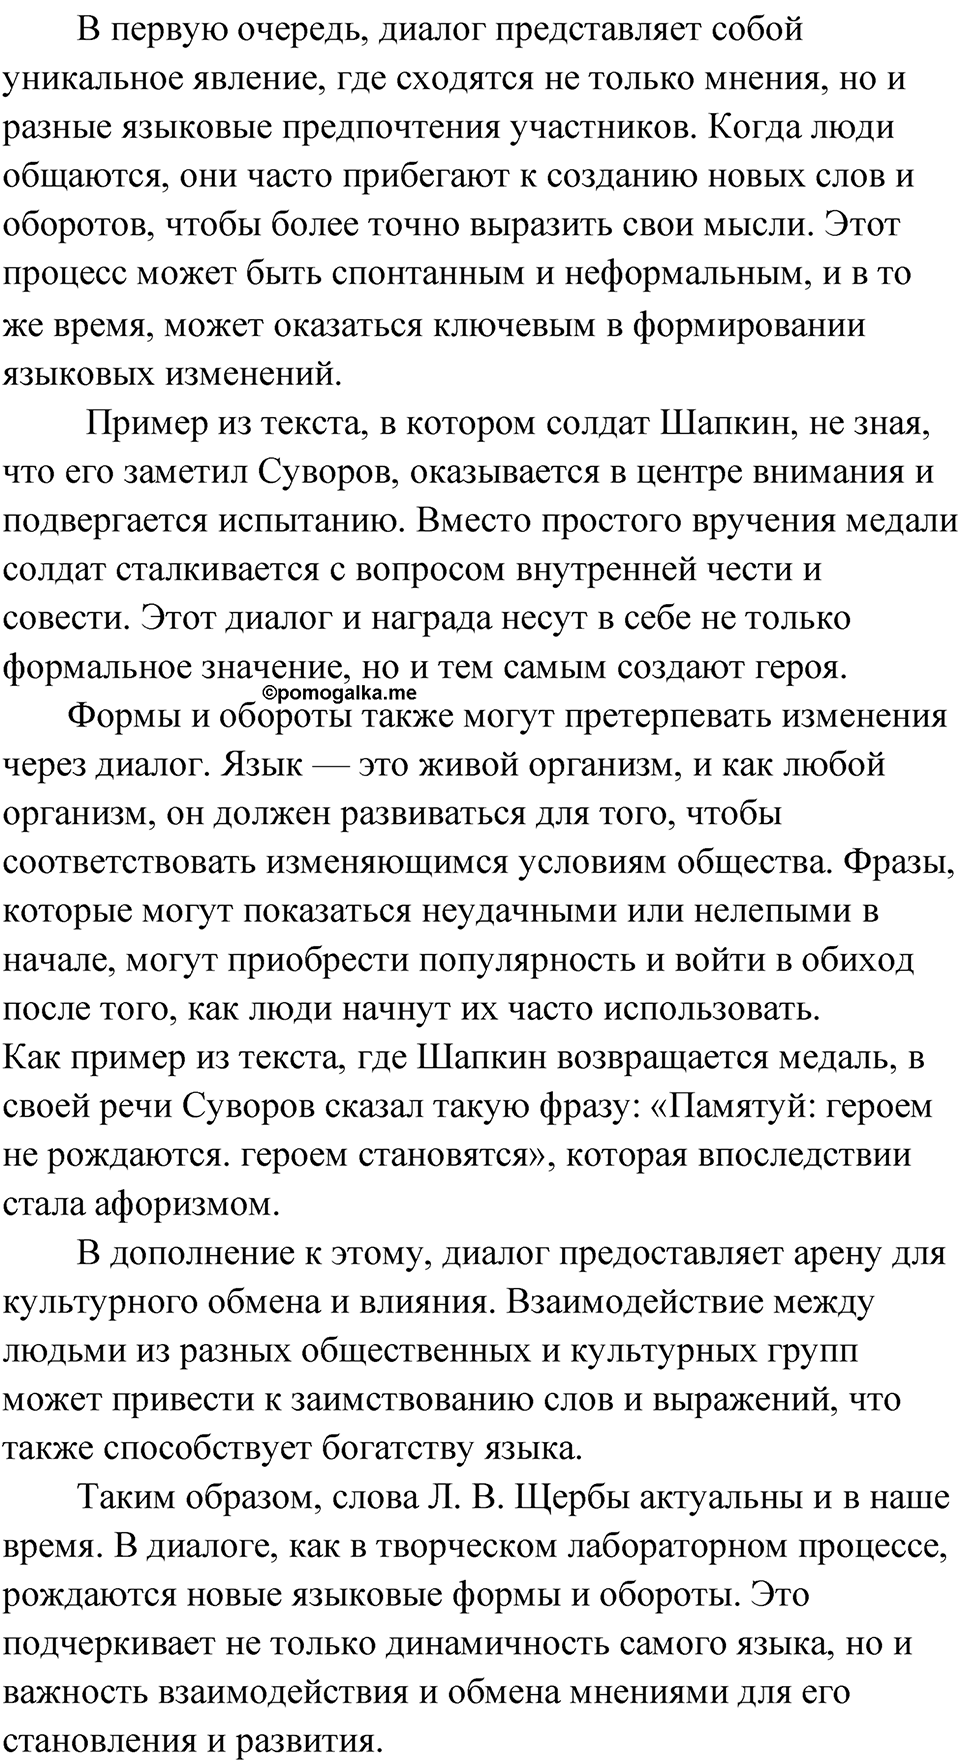 страница 79 Анализируем текст русский язык 9 класс Быстрова 2 часть 2022 год